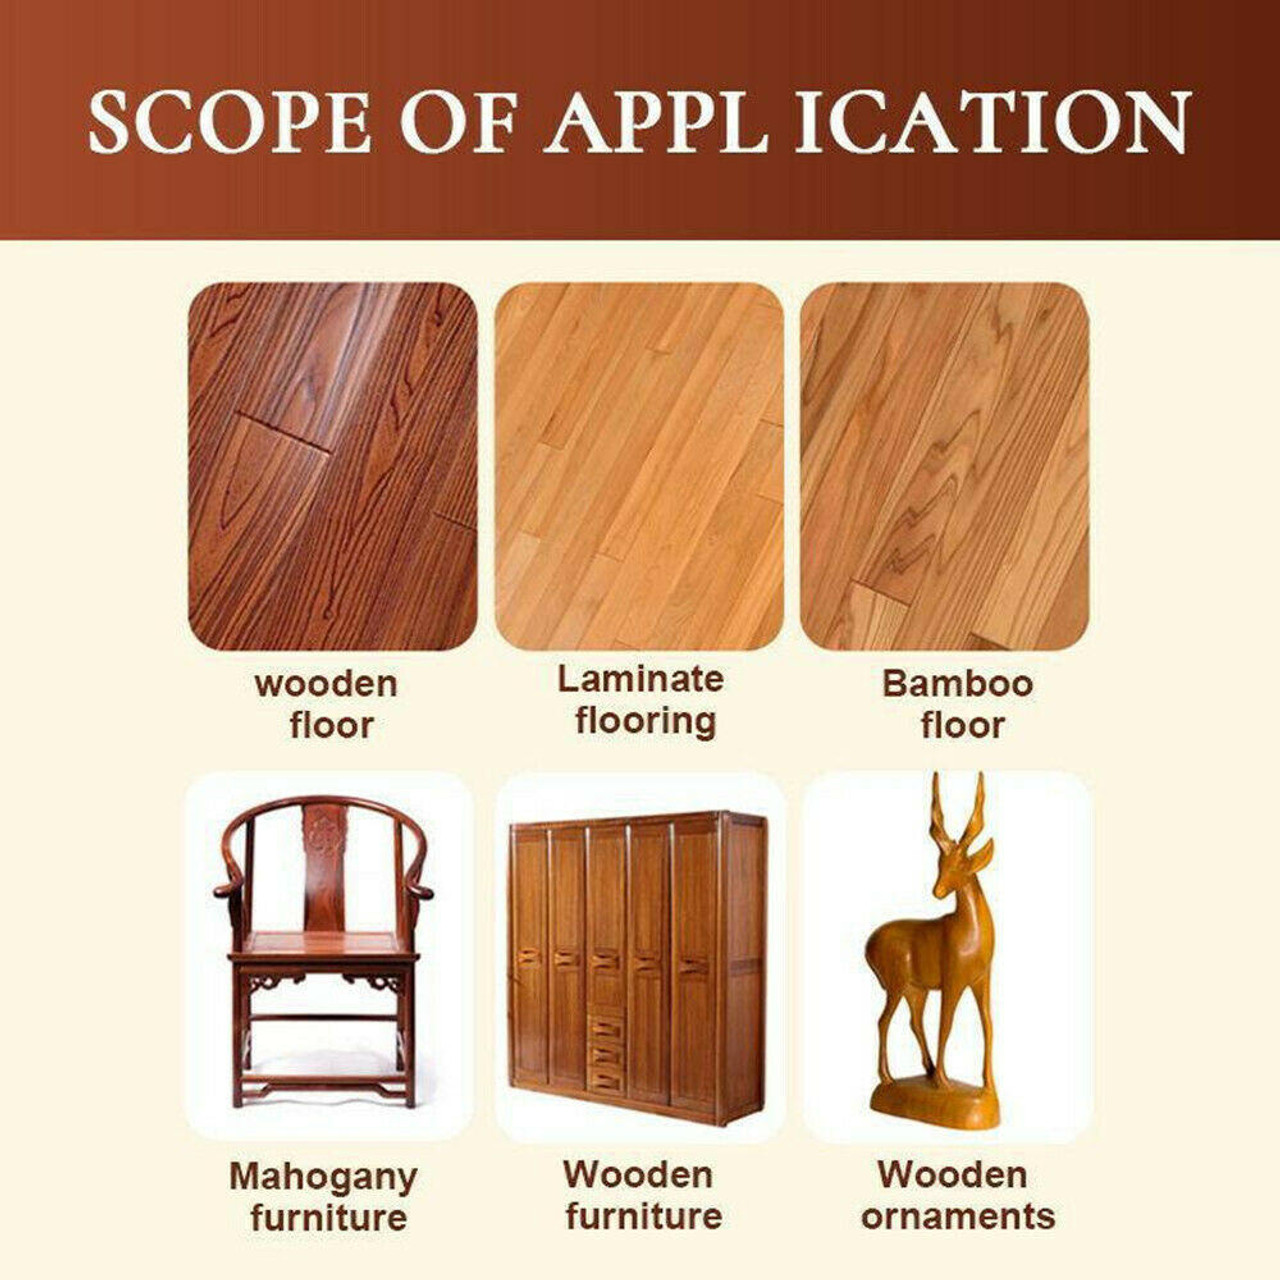 Floor Wax For Wood Floors 80g Multipurpose Furniture Polish